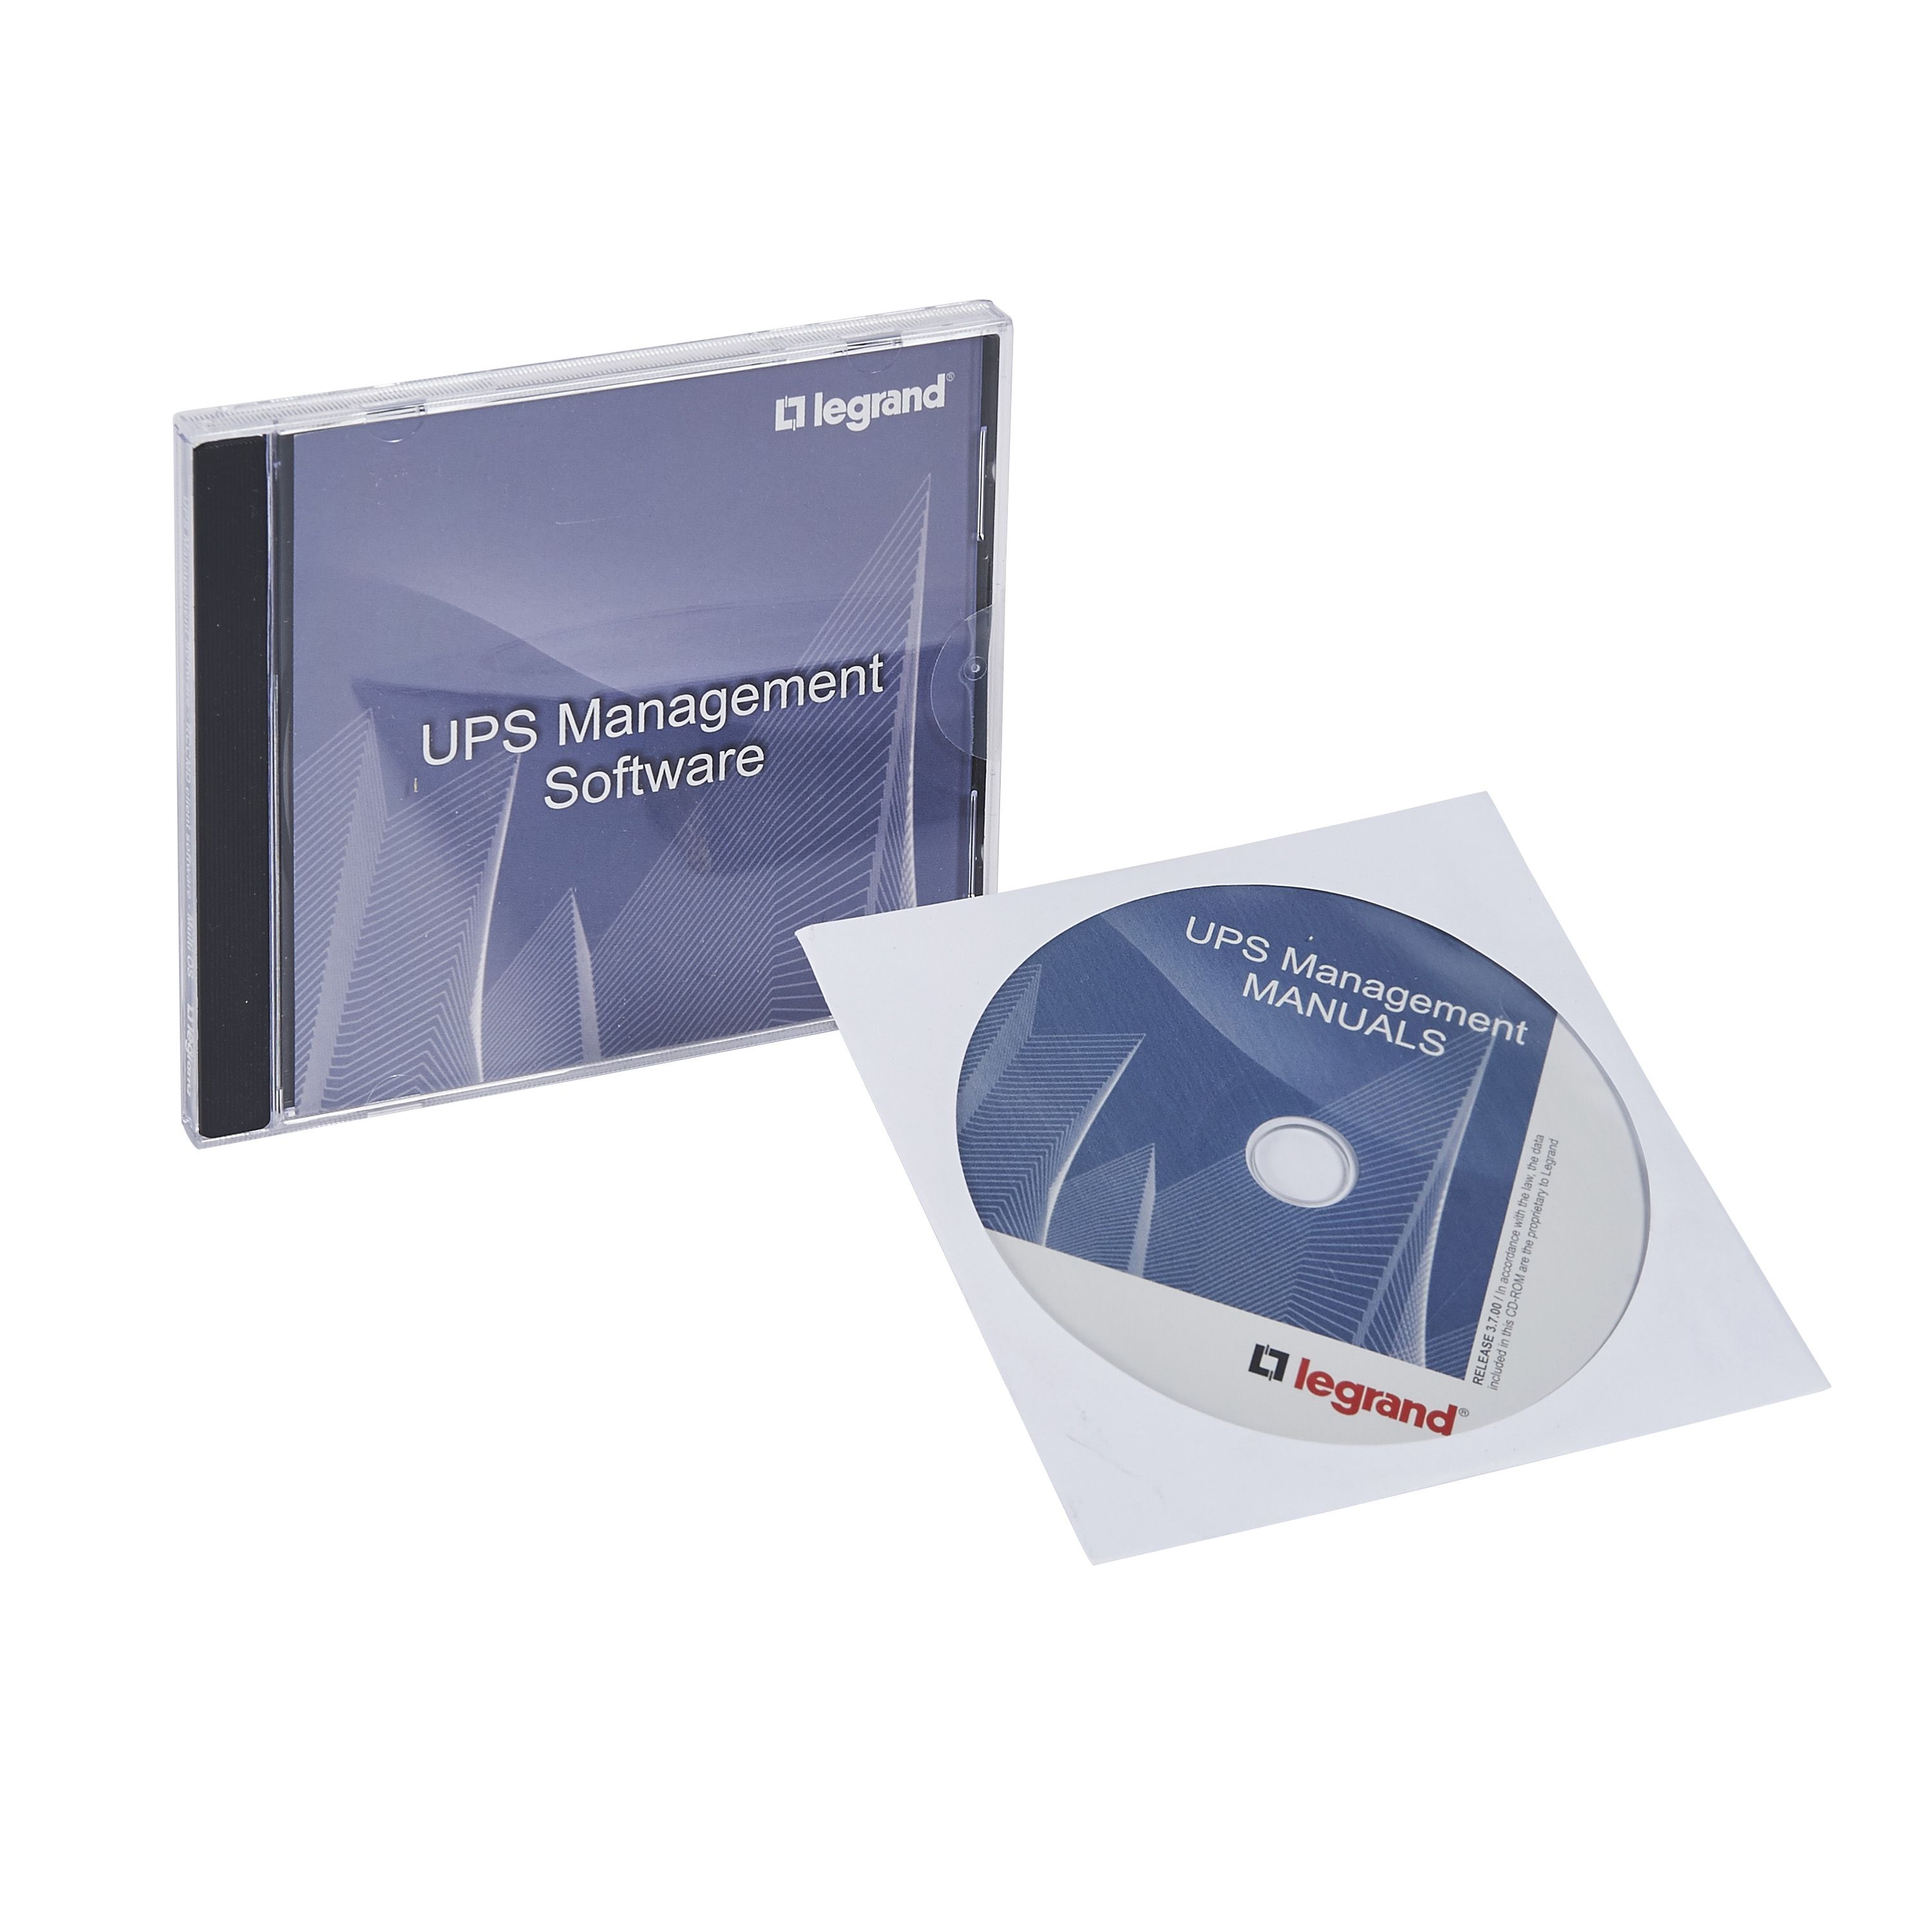 UNMS (25 Lizenzen), Netzwerkmanagment Software zur Überw. Von USV Anlagen